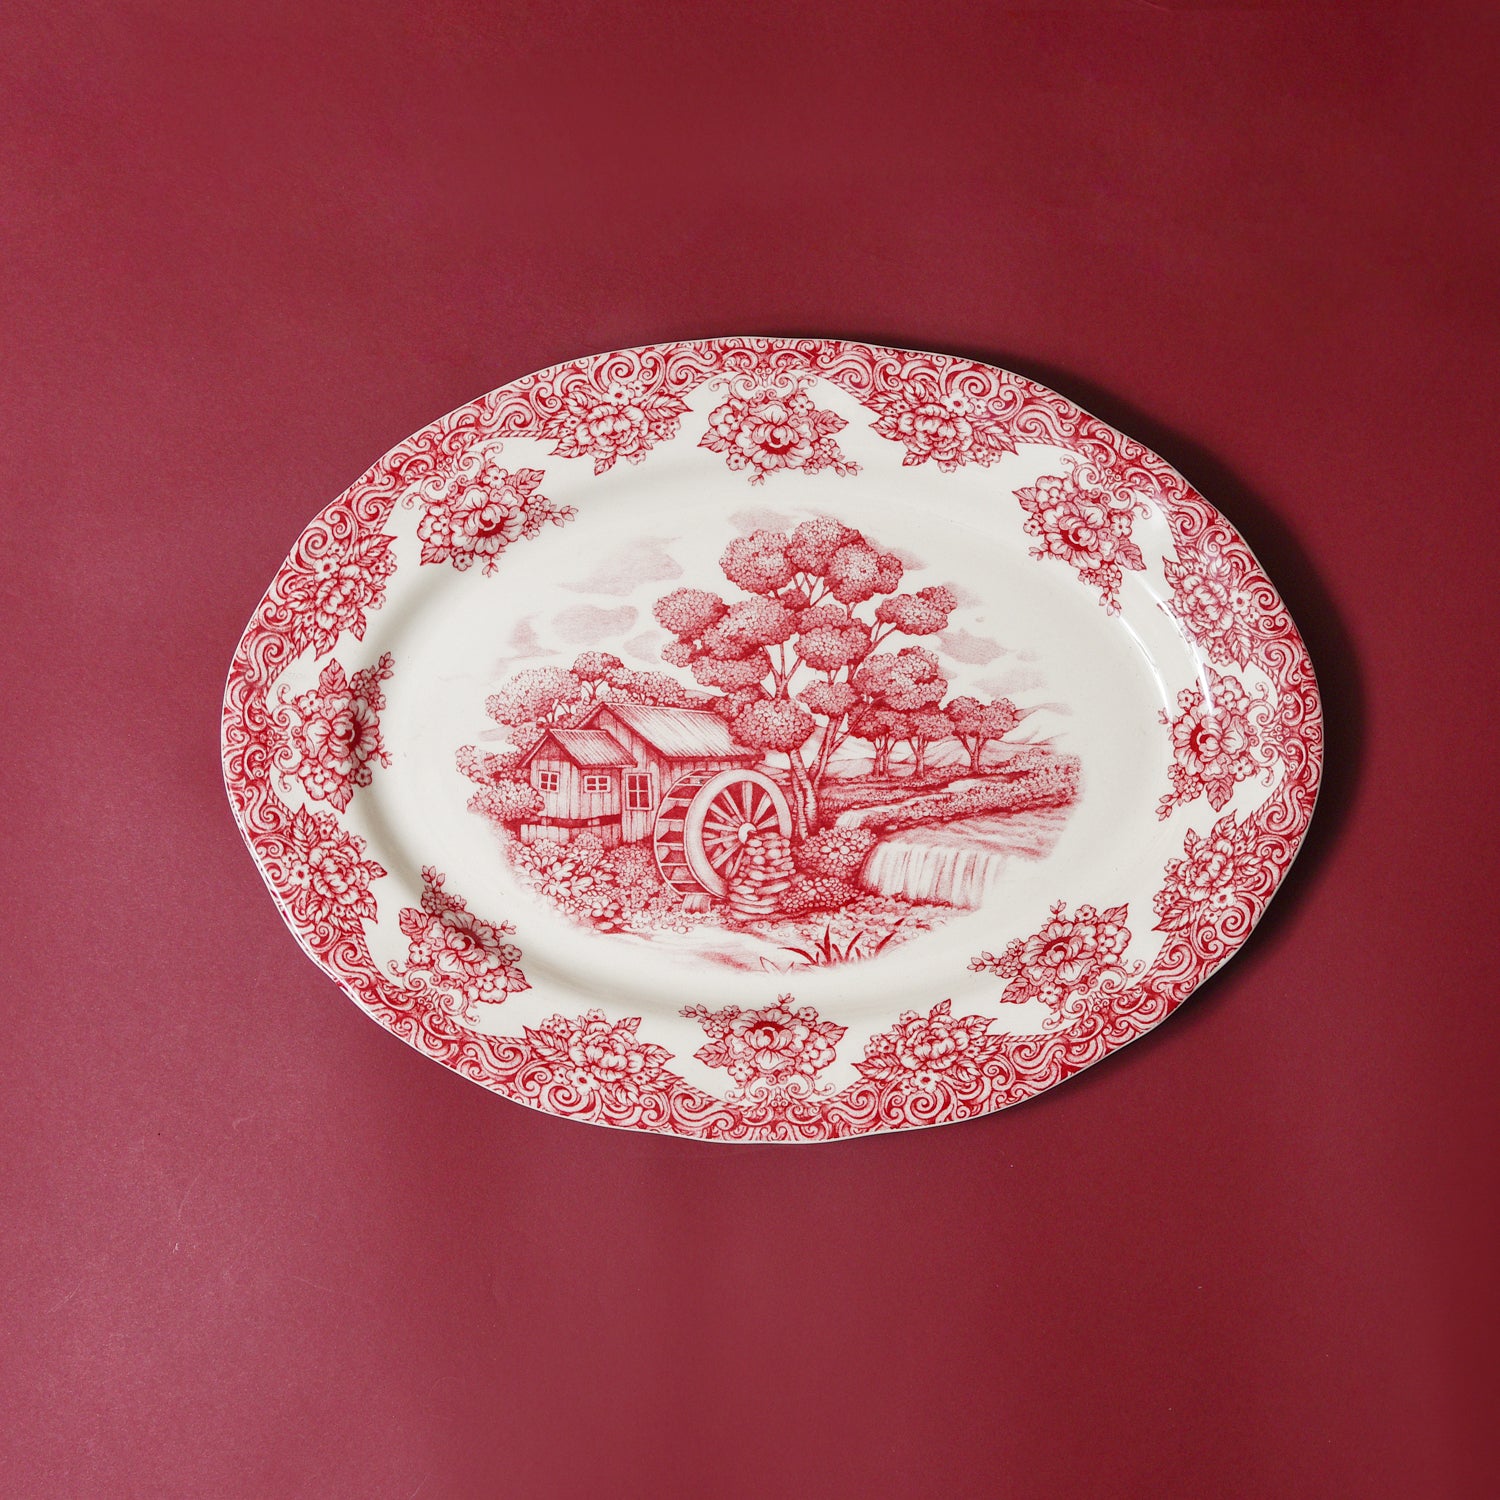 Waterwheel Cranberry Oval Platter